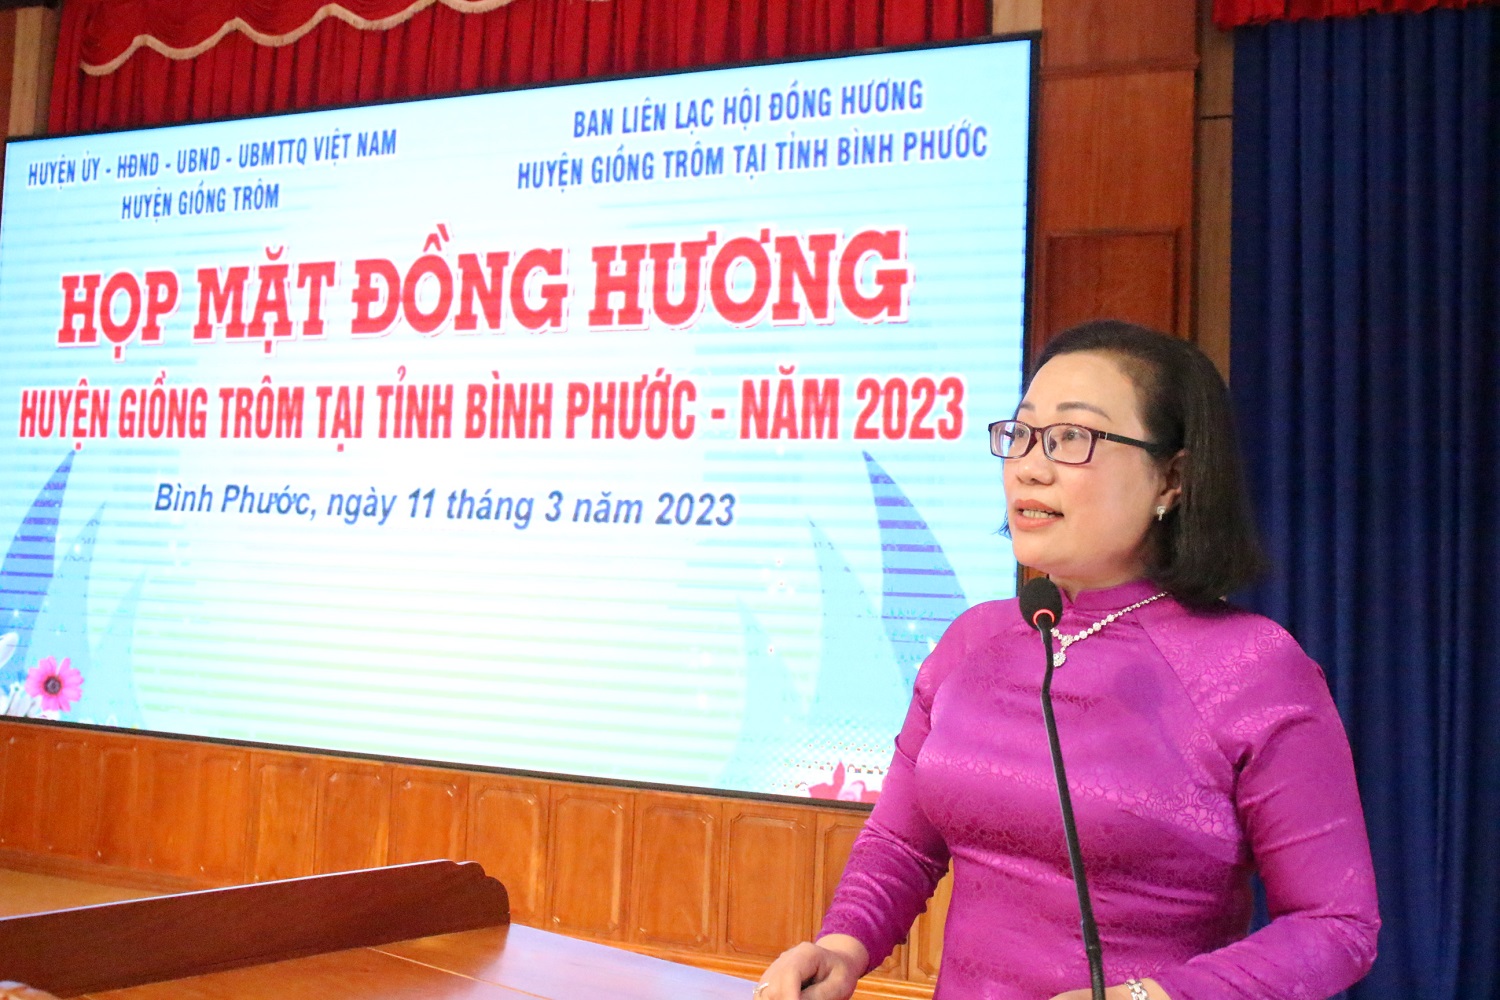 Họp mặt Hội đồng hương huyện Giồng Trôm tại tỉnh Bình Phước.